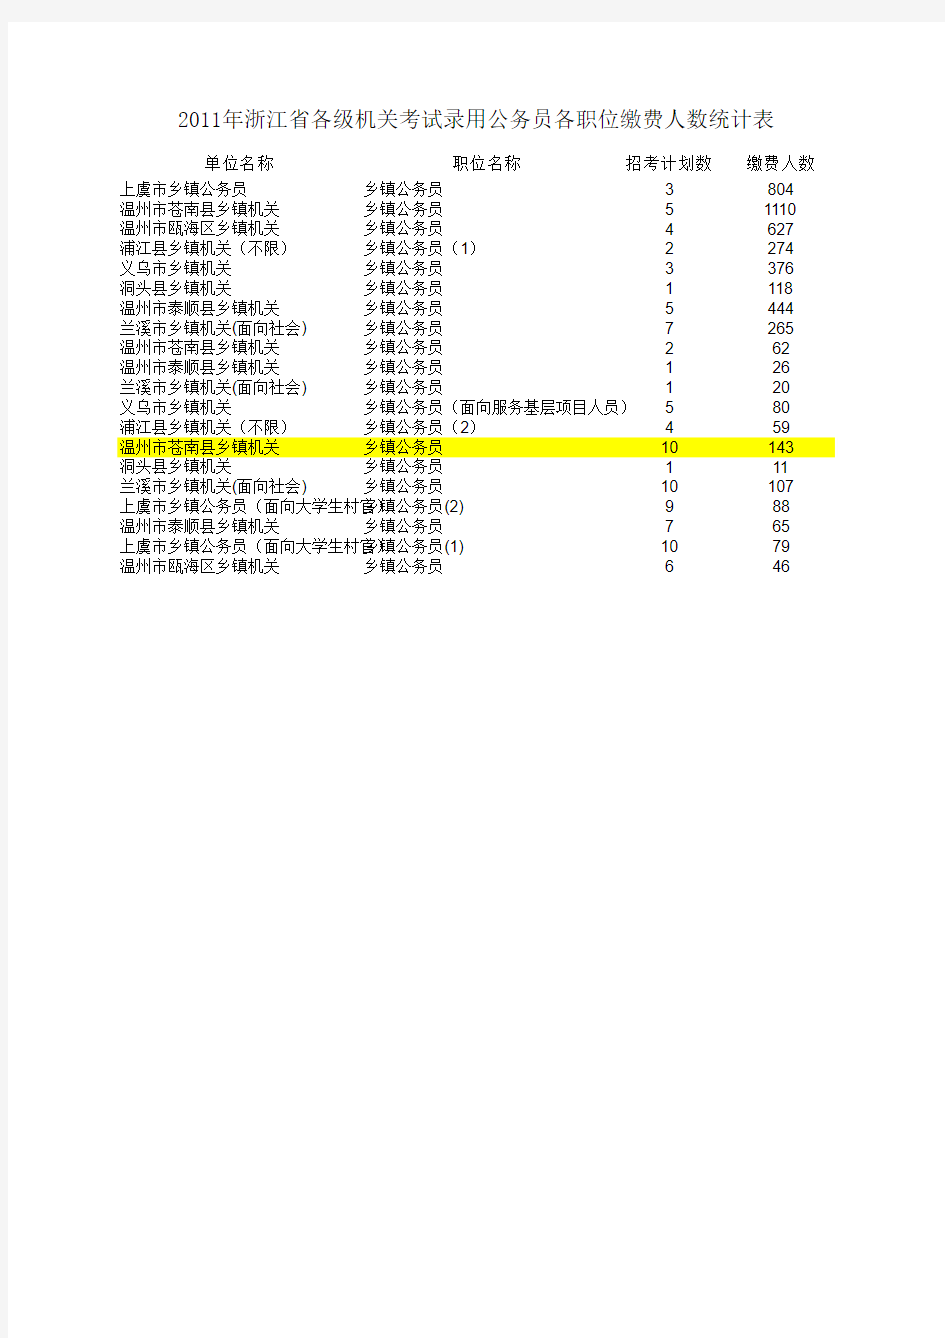 2011年浙江省公务员考试各职位缴费人数统计表